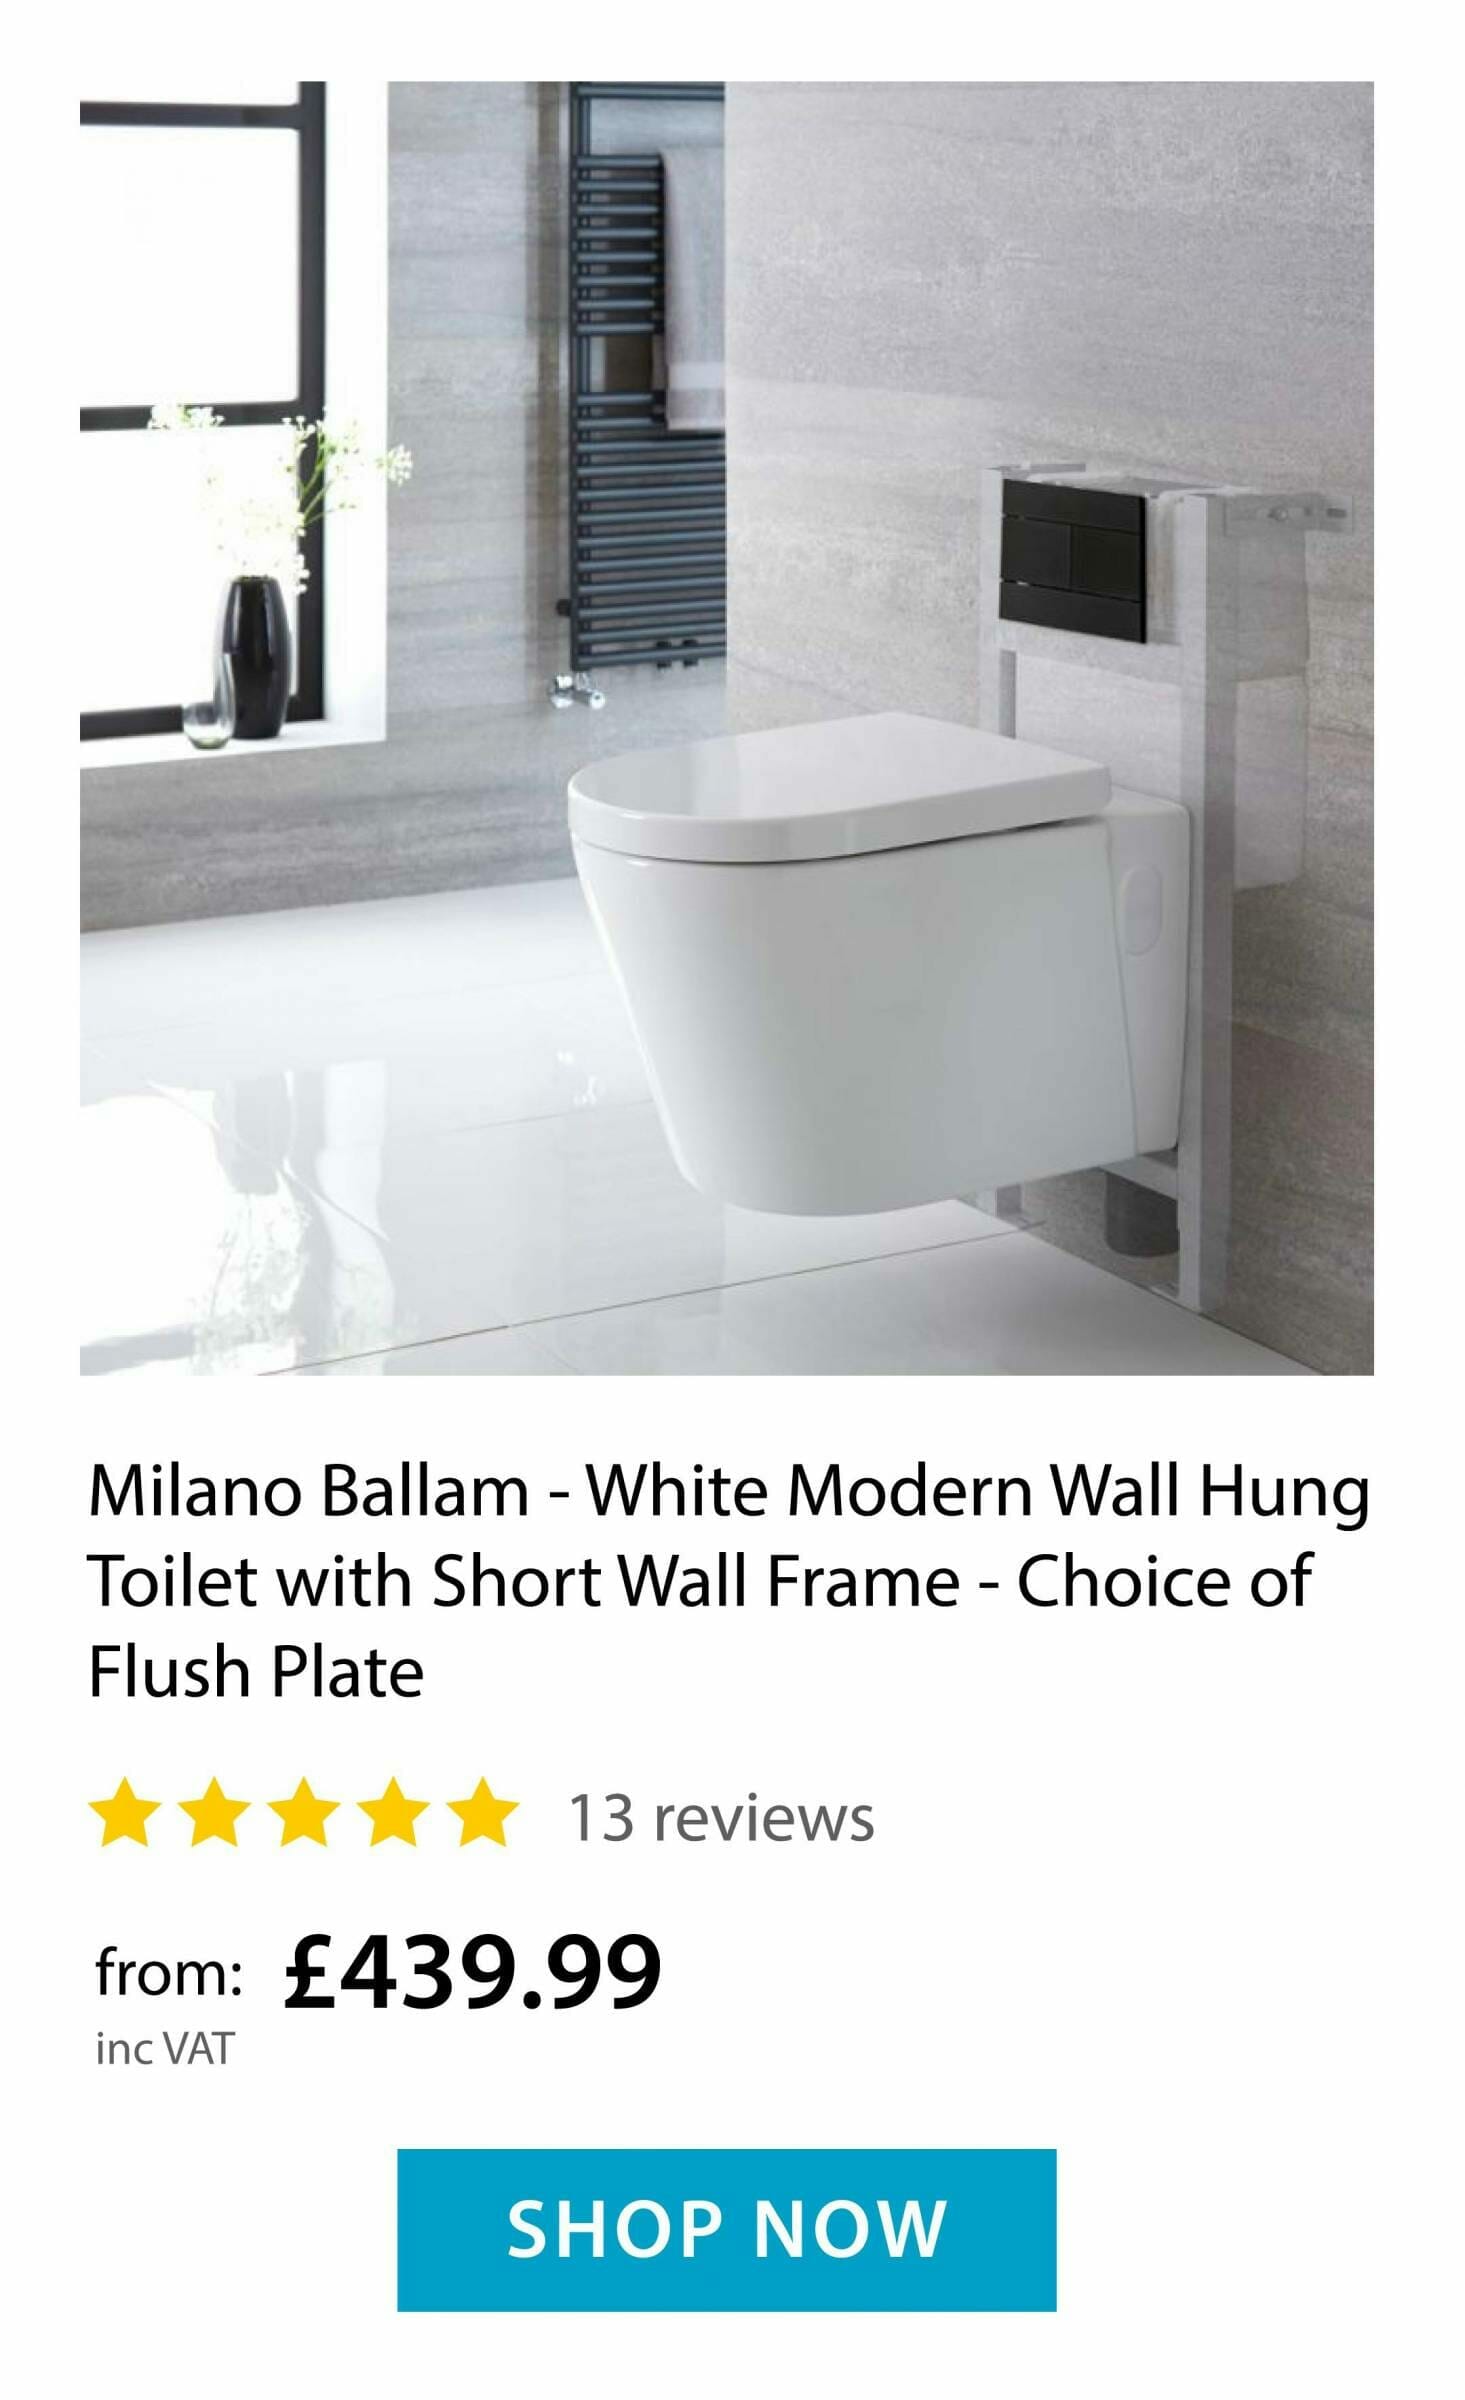 Milano Ballam Wall Hung Toilet